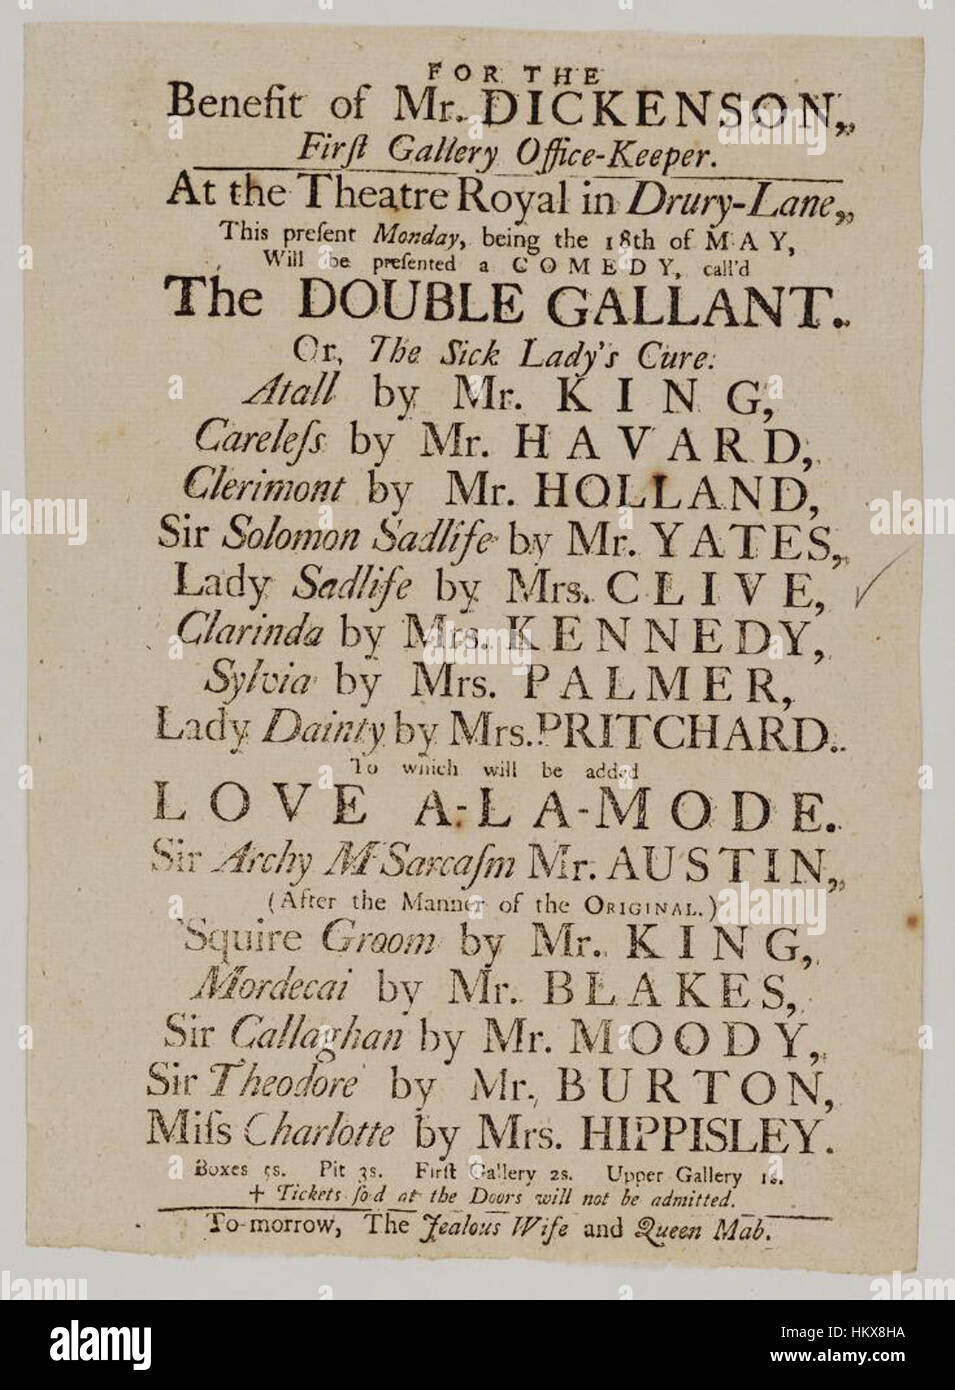 Librerie di Bodleian, locandina del Drury Lane Theatre, lunedì, essendo il 18 maggio 1759, annunciando la doppia gallant. O i malati lady's curare &c. Foto Stock